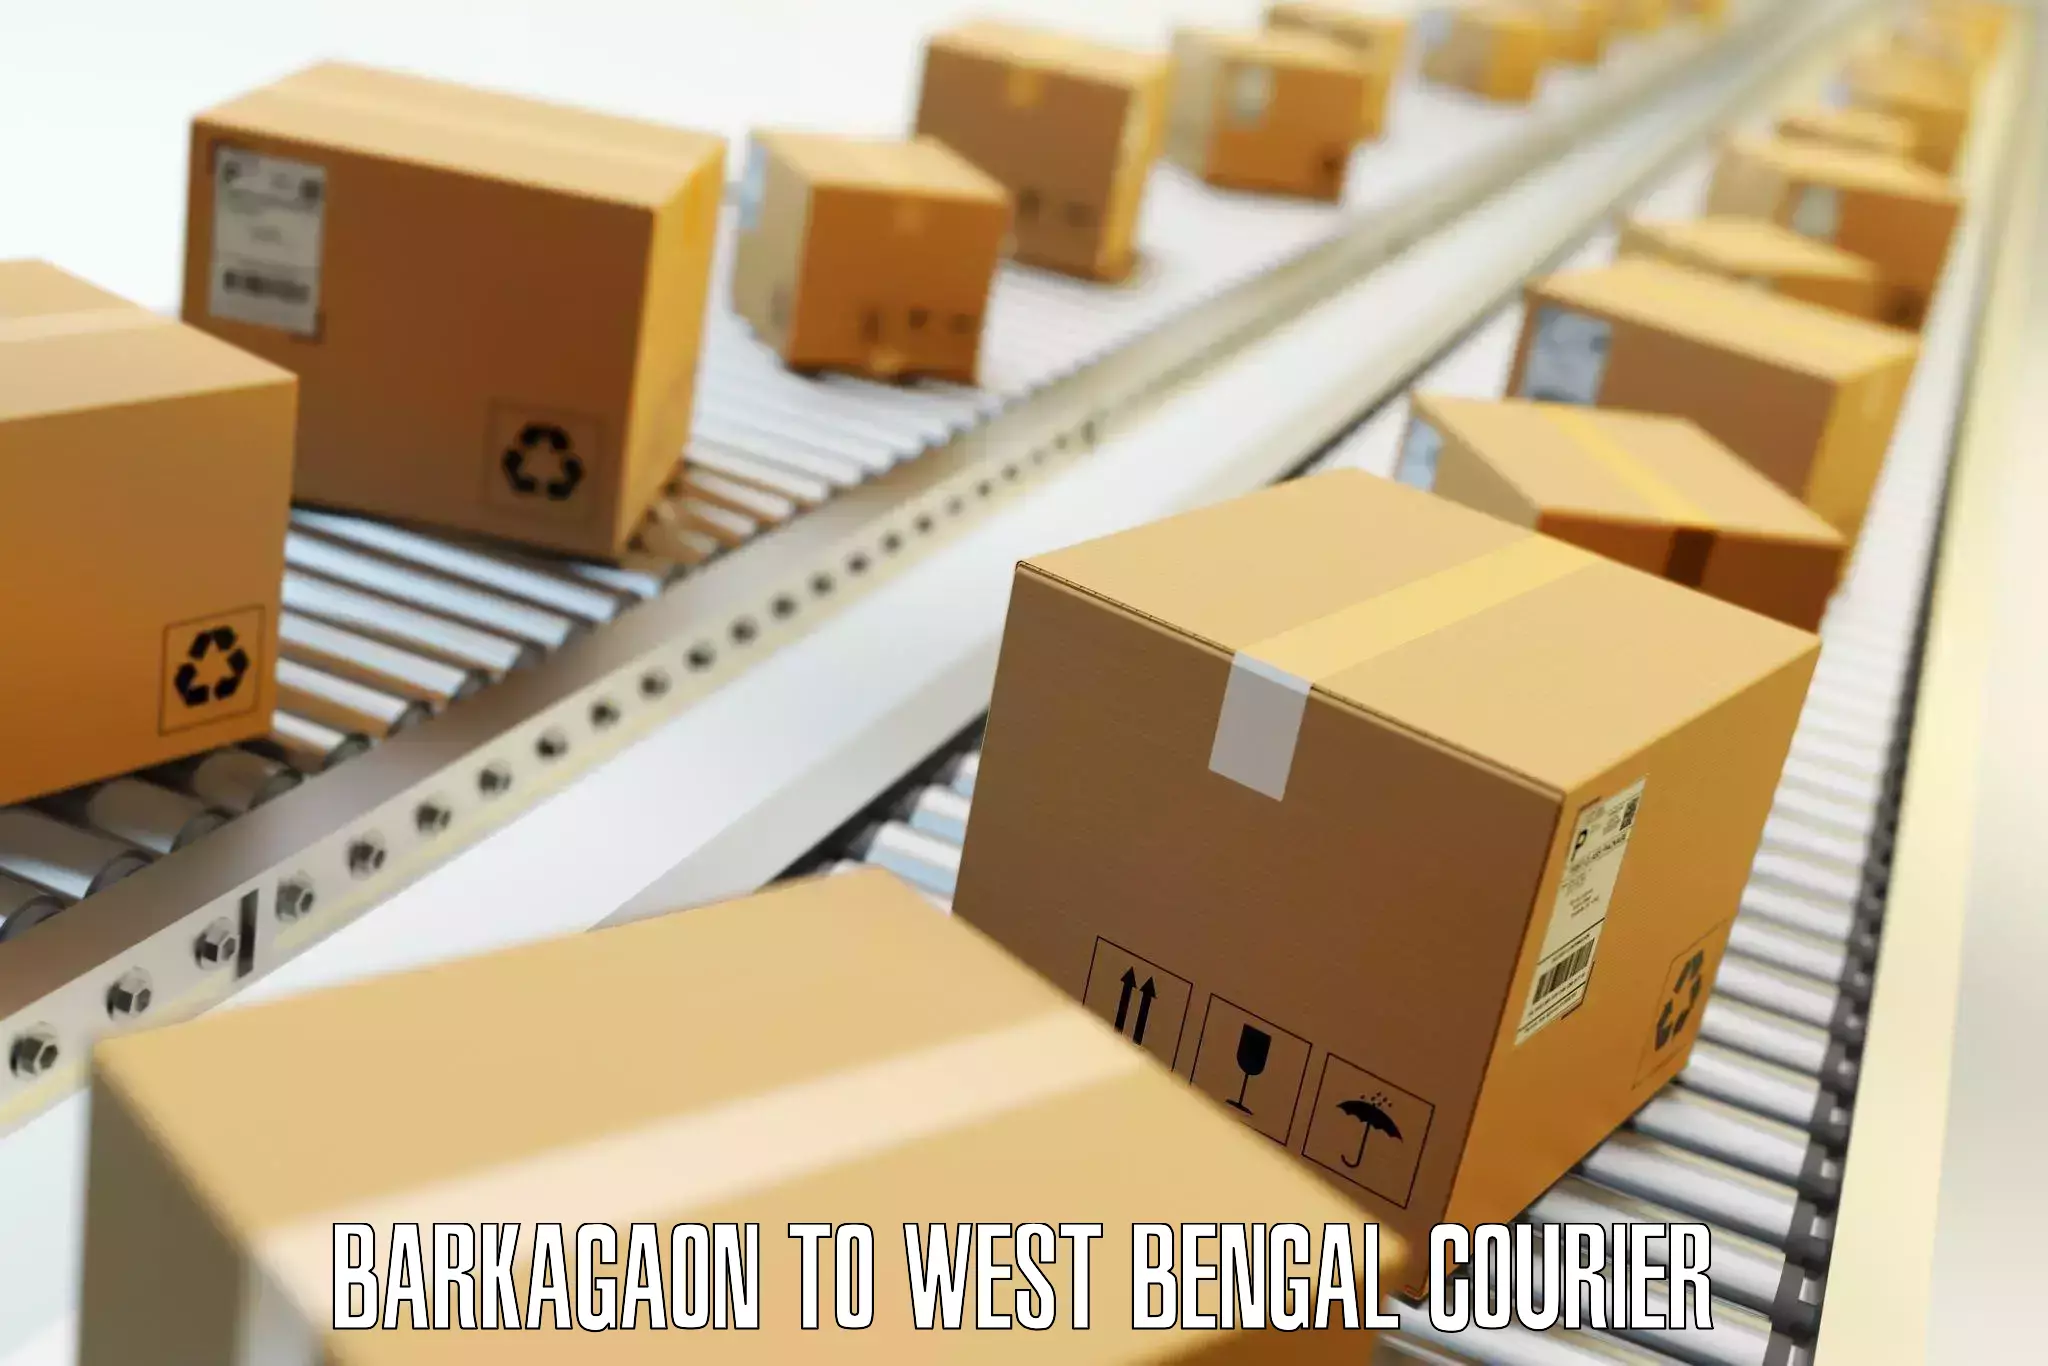 Personal effects shipping Barkagaon to Kolkata Port